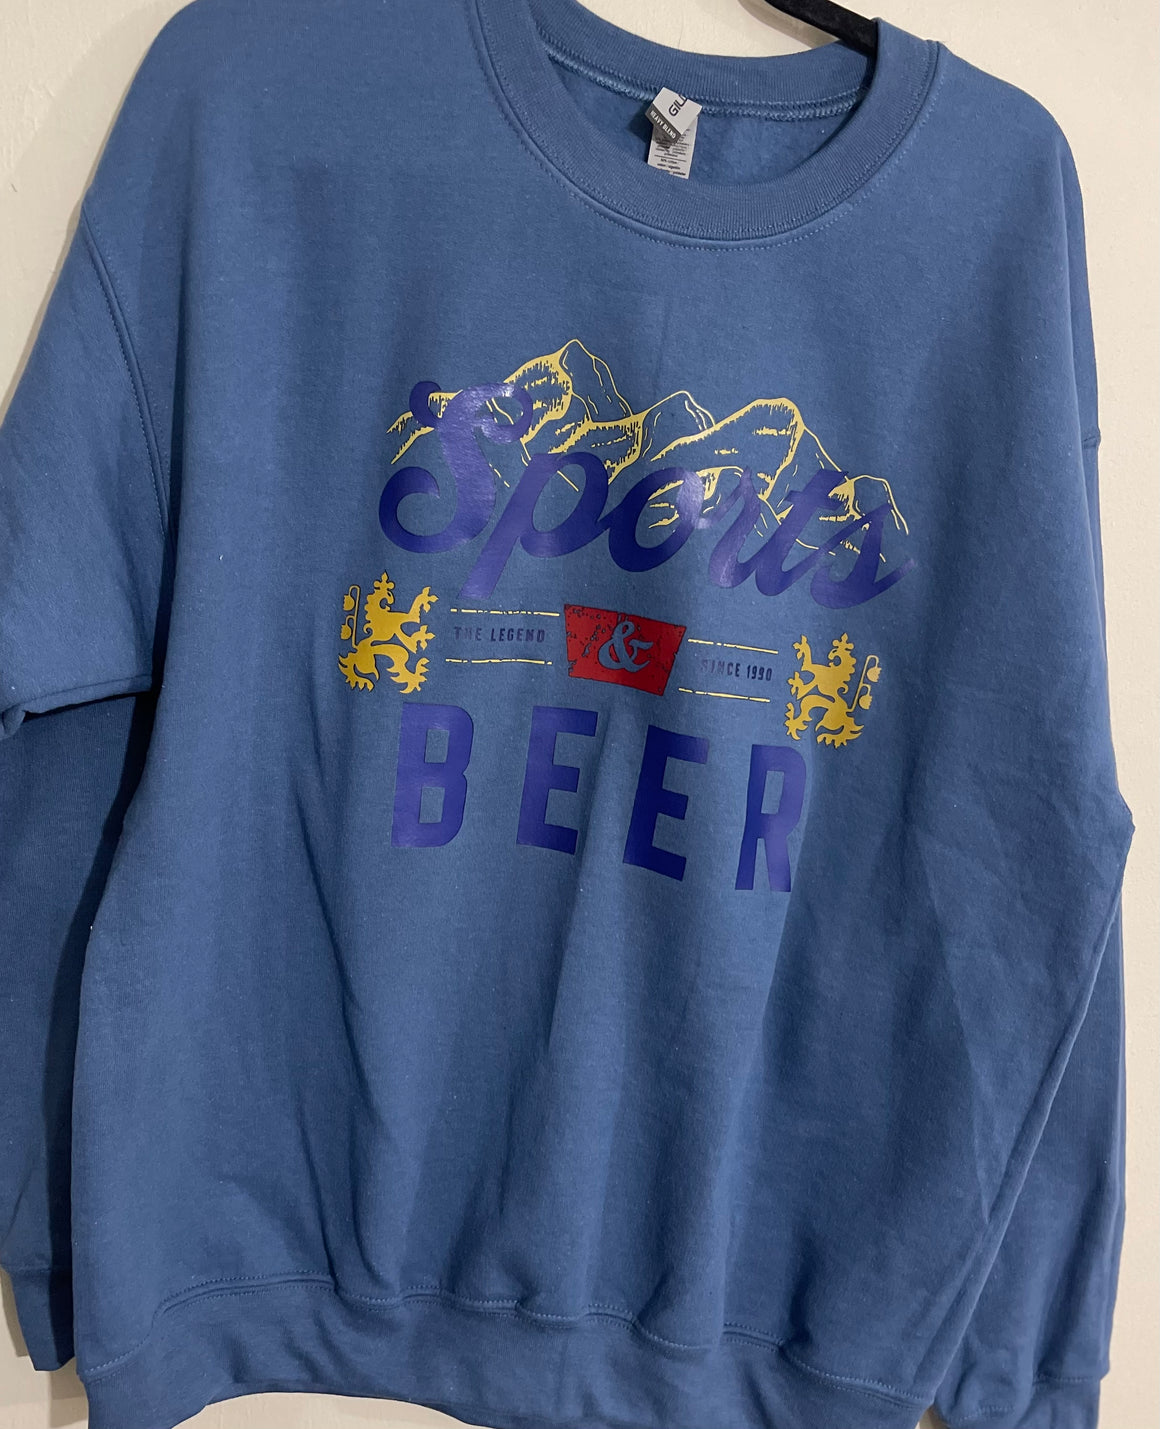 Sports & Beer Graphic Sweatshirt